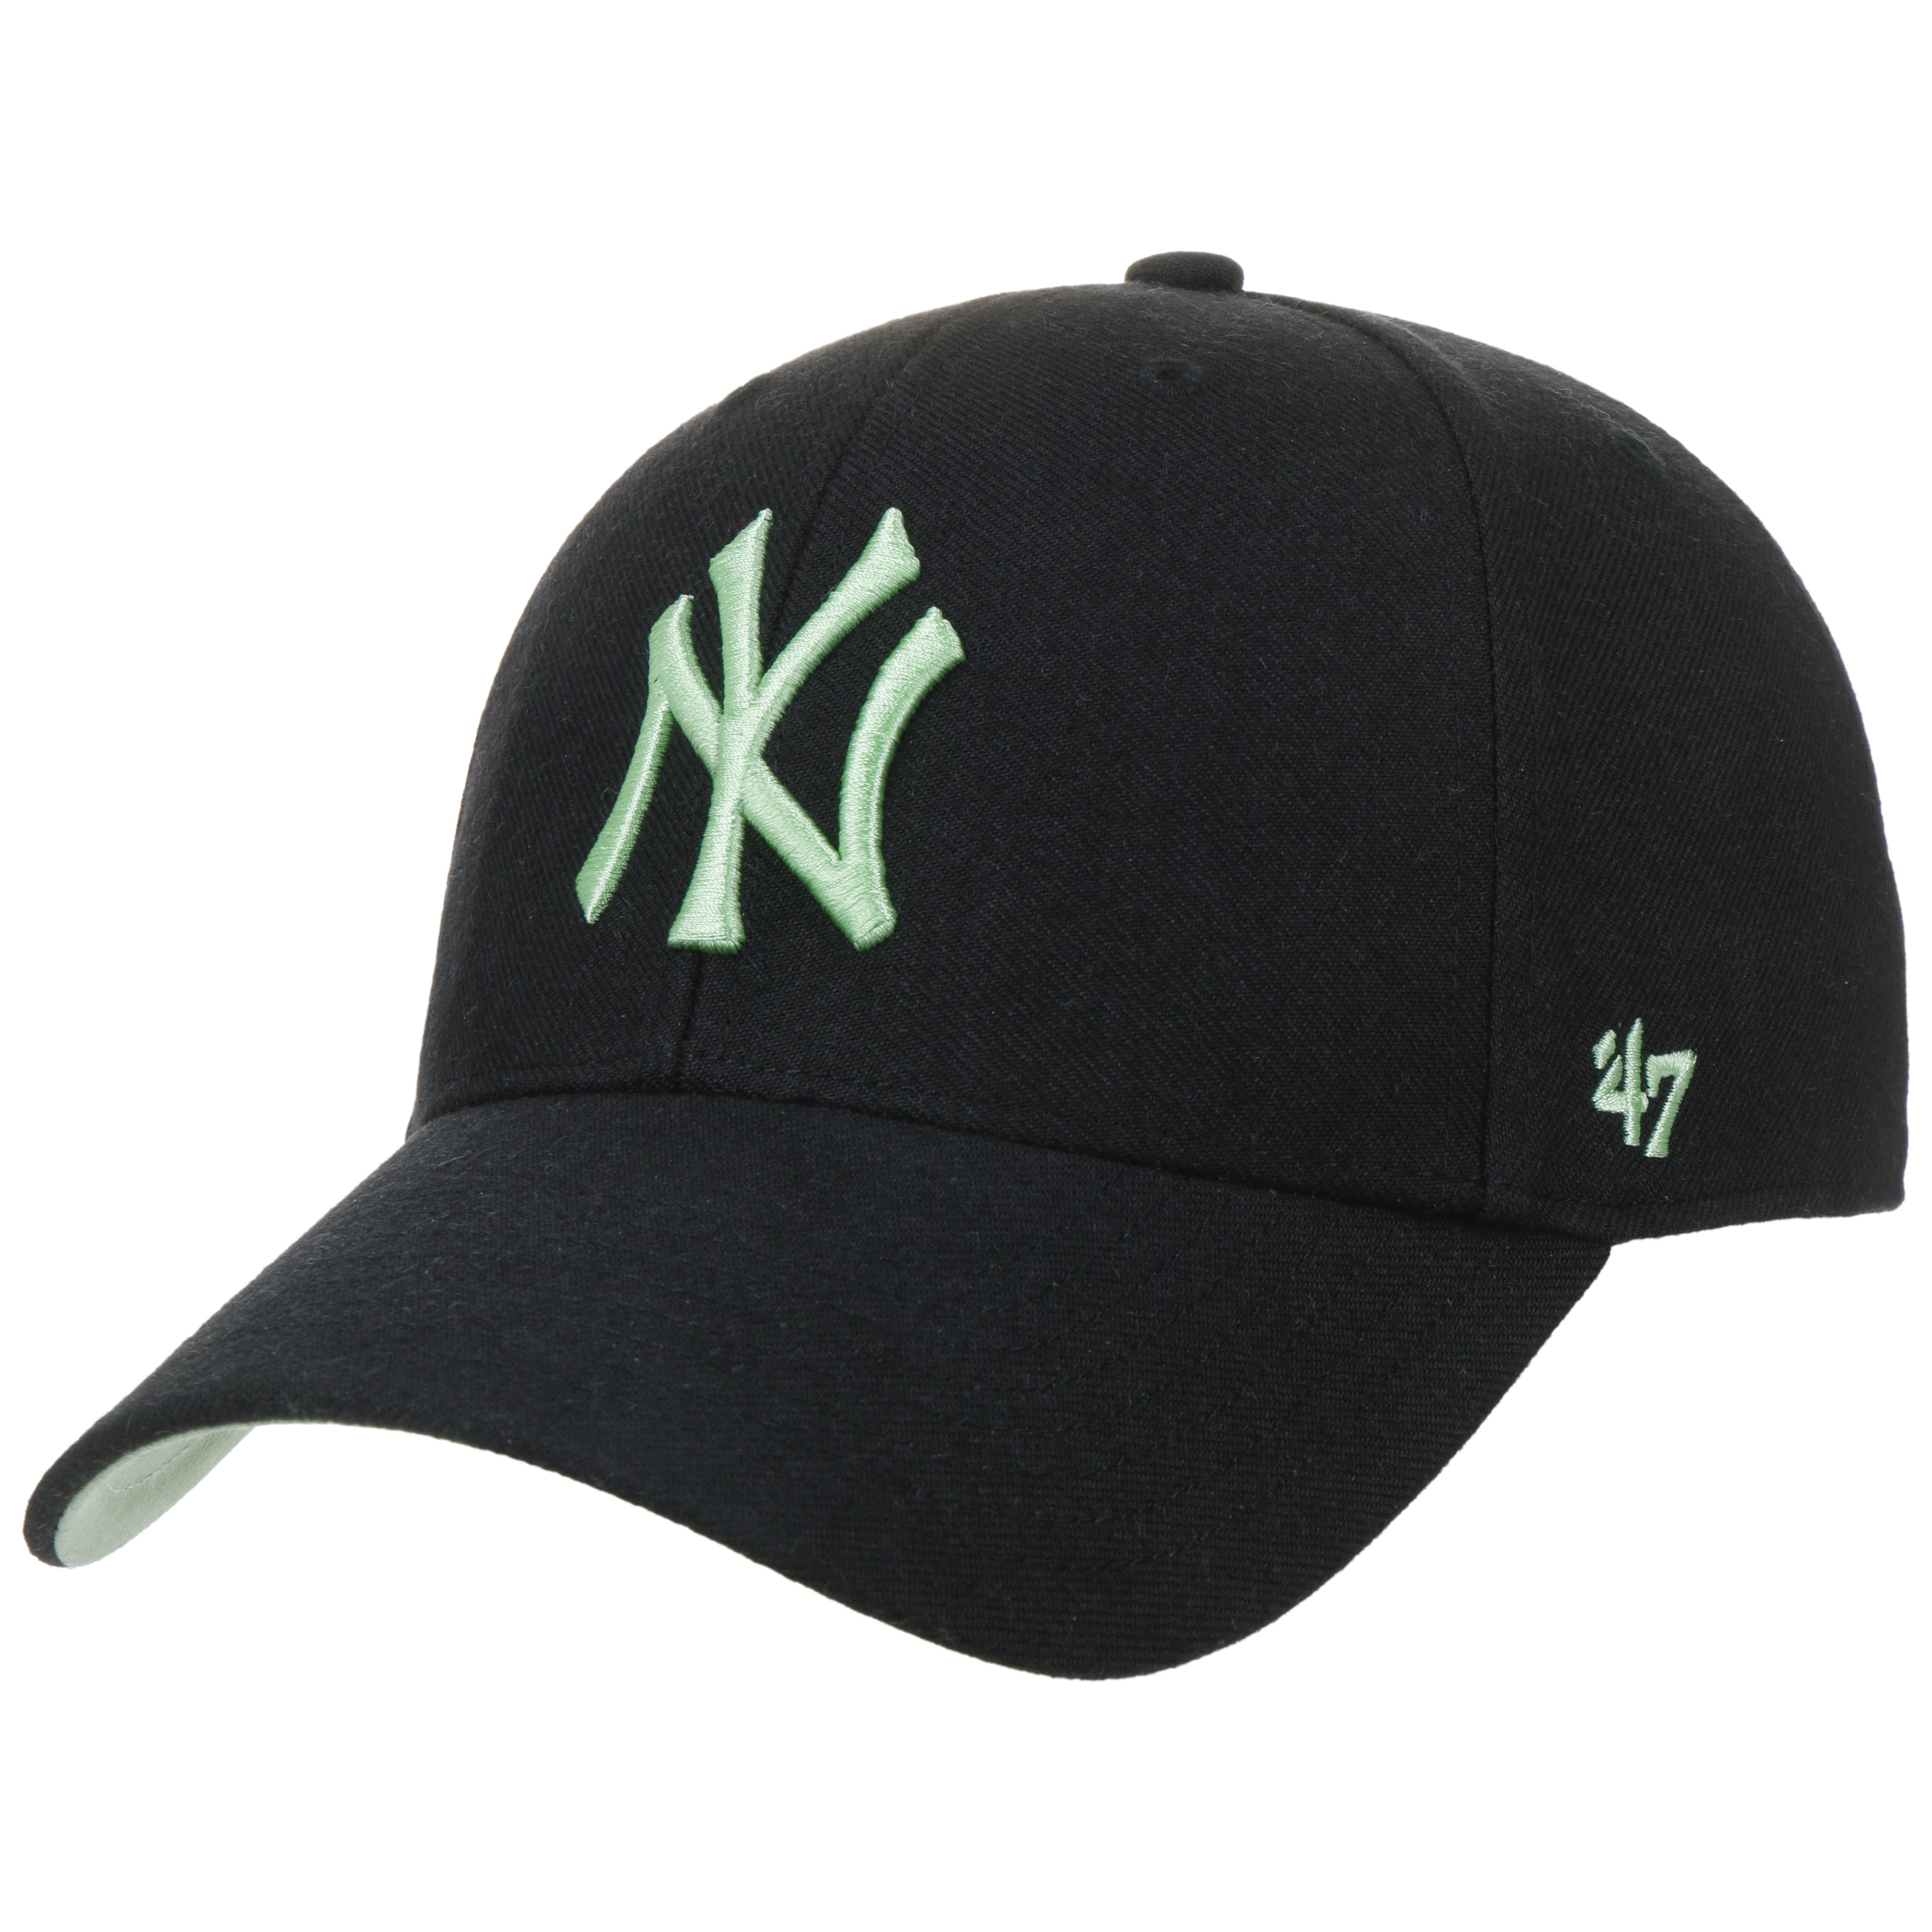 Casquette NY des Yankees couleur verte - '47